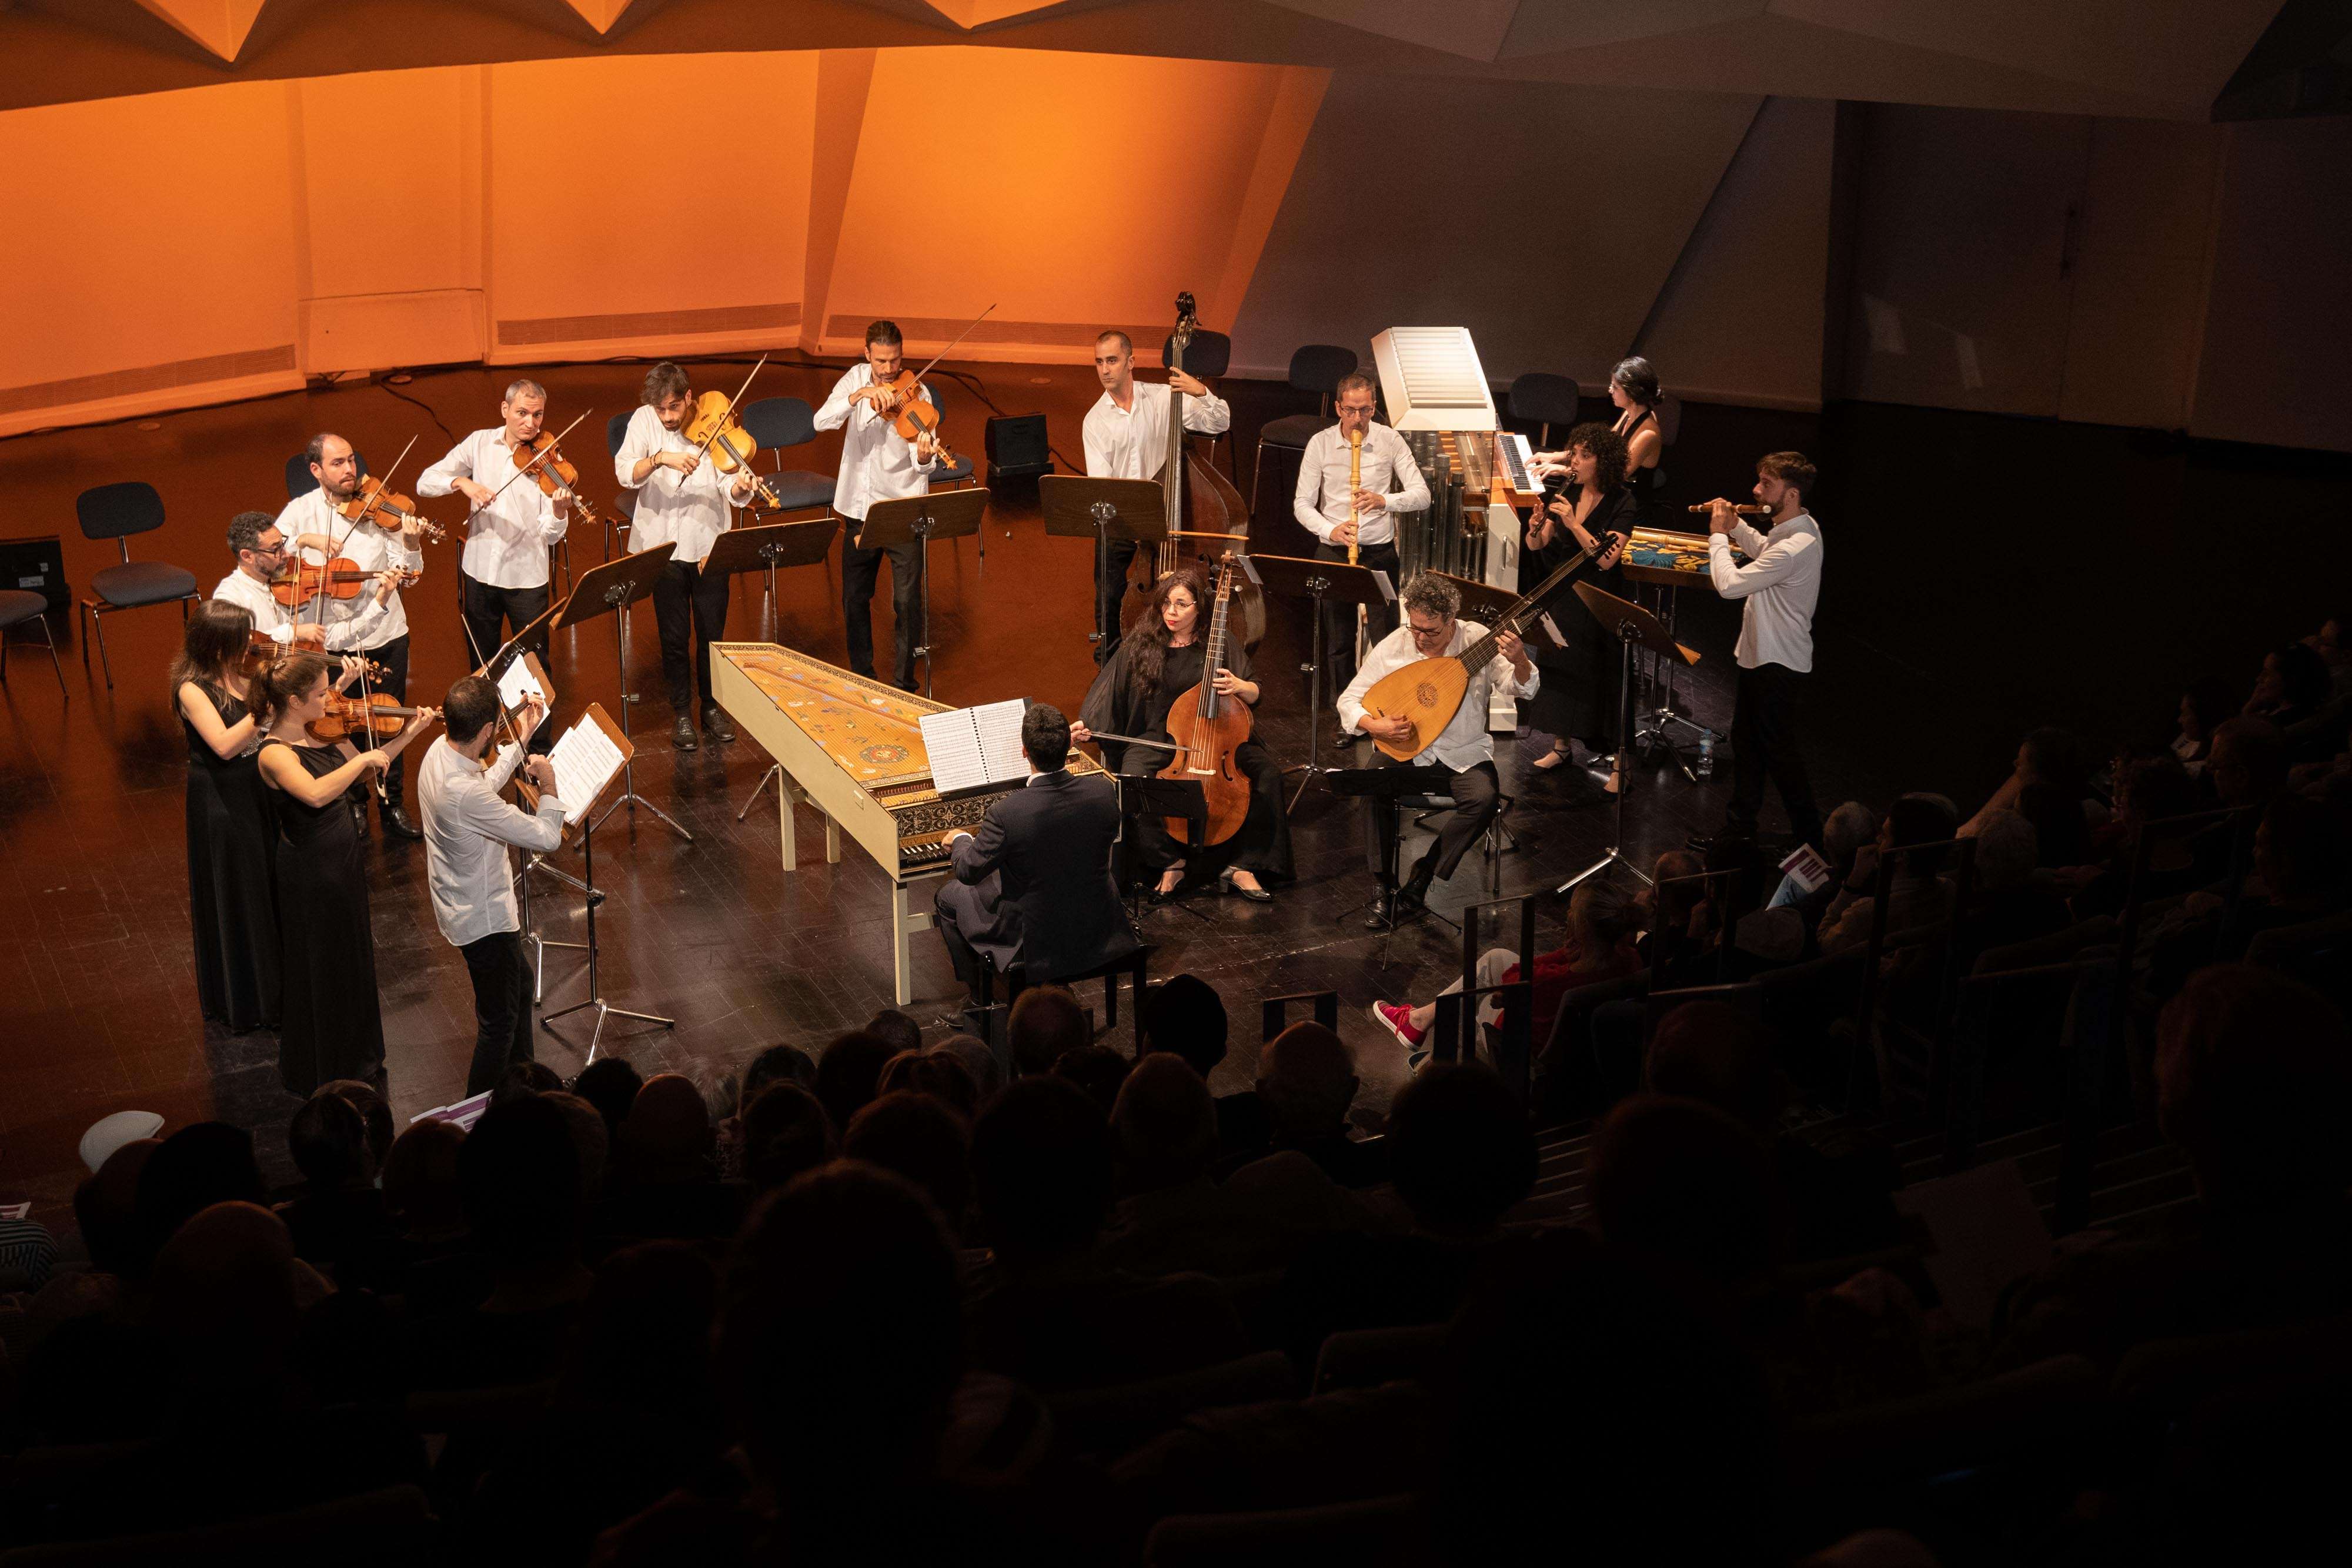 Además, la formación residente del Auditorio de Tenerife se suma al Área Educativa y Social del centro cultural con sesiones musicales didácticas